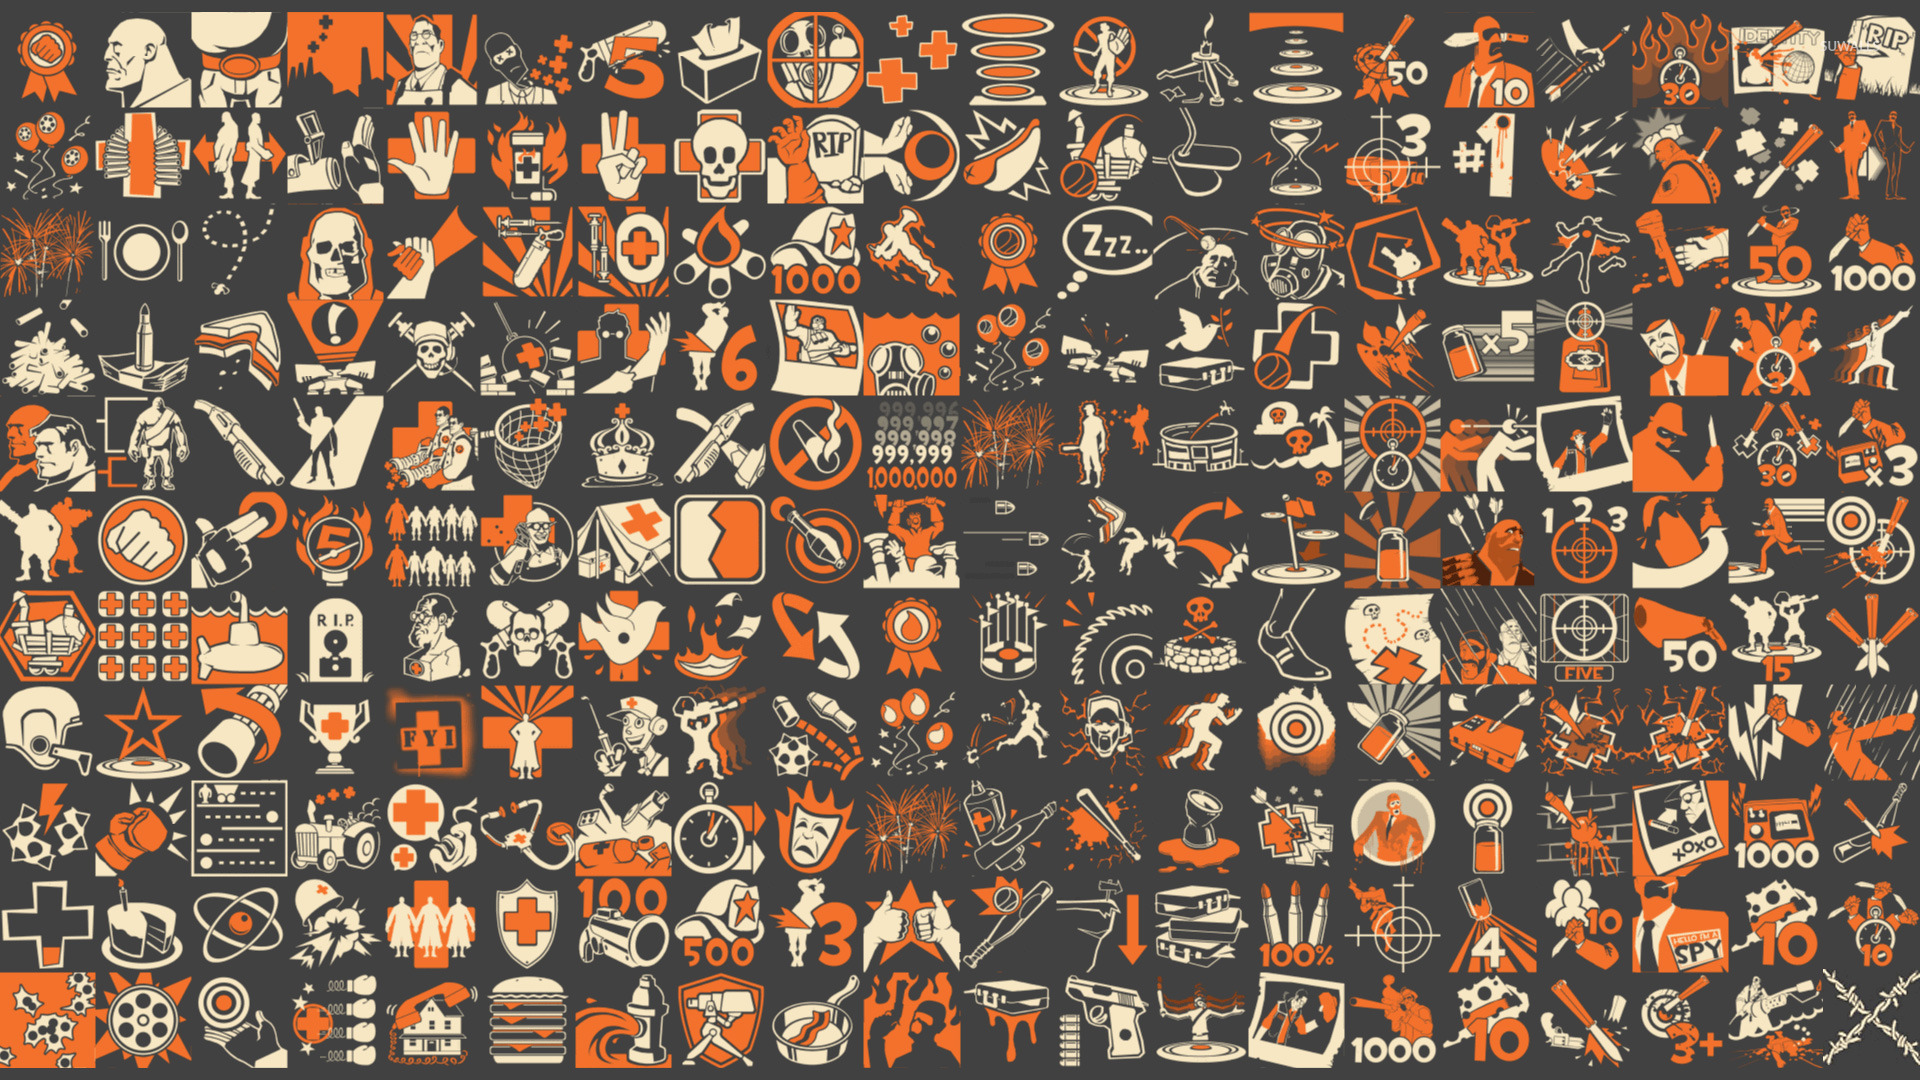 Team Fortress HD Wallpaper